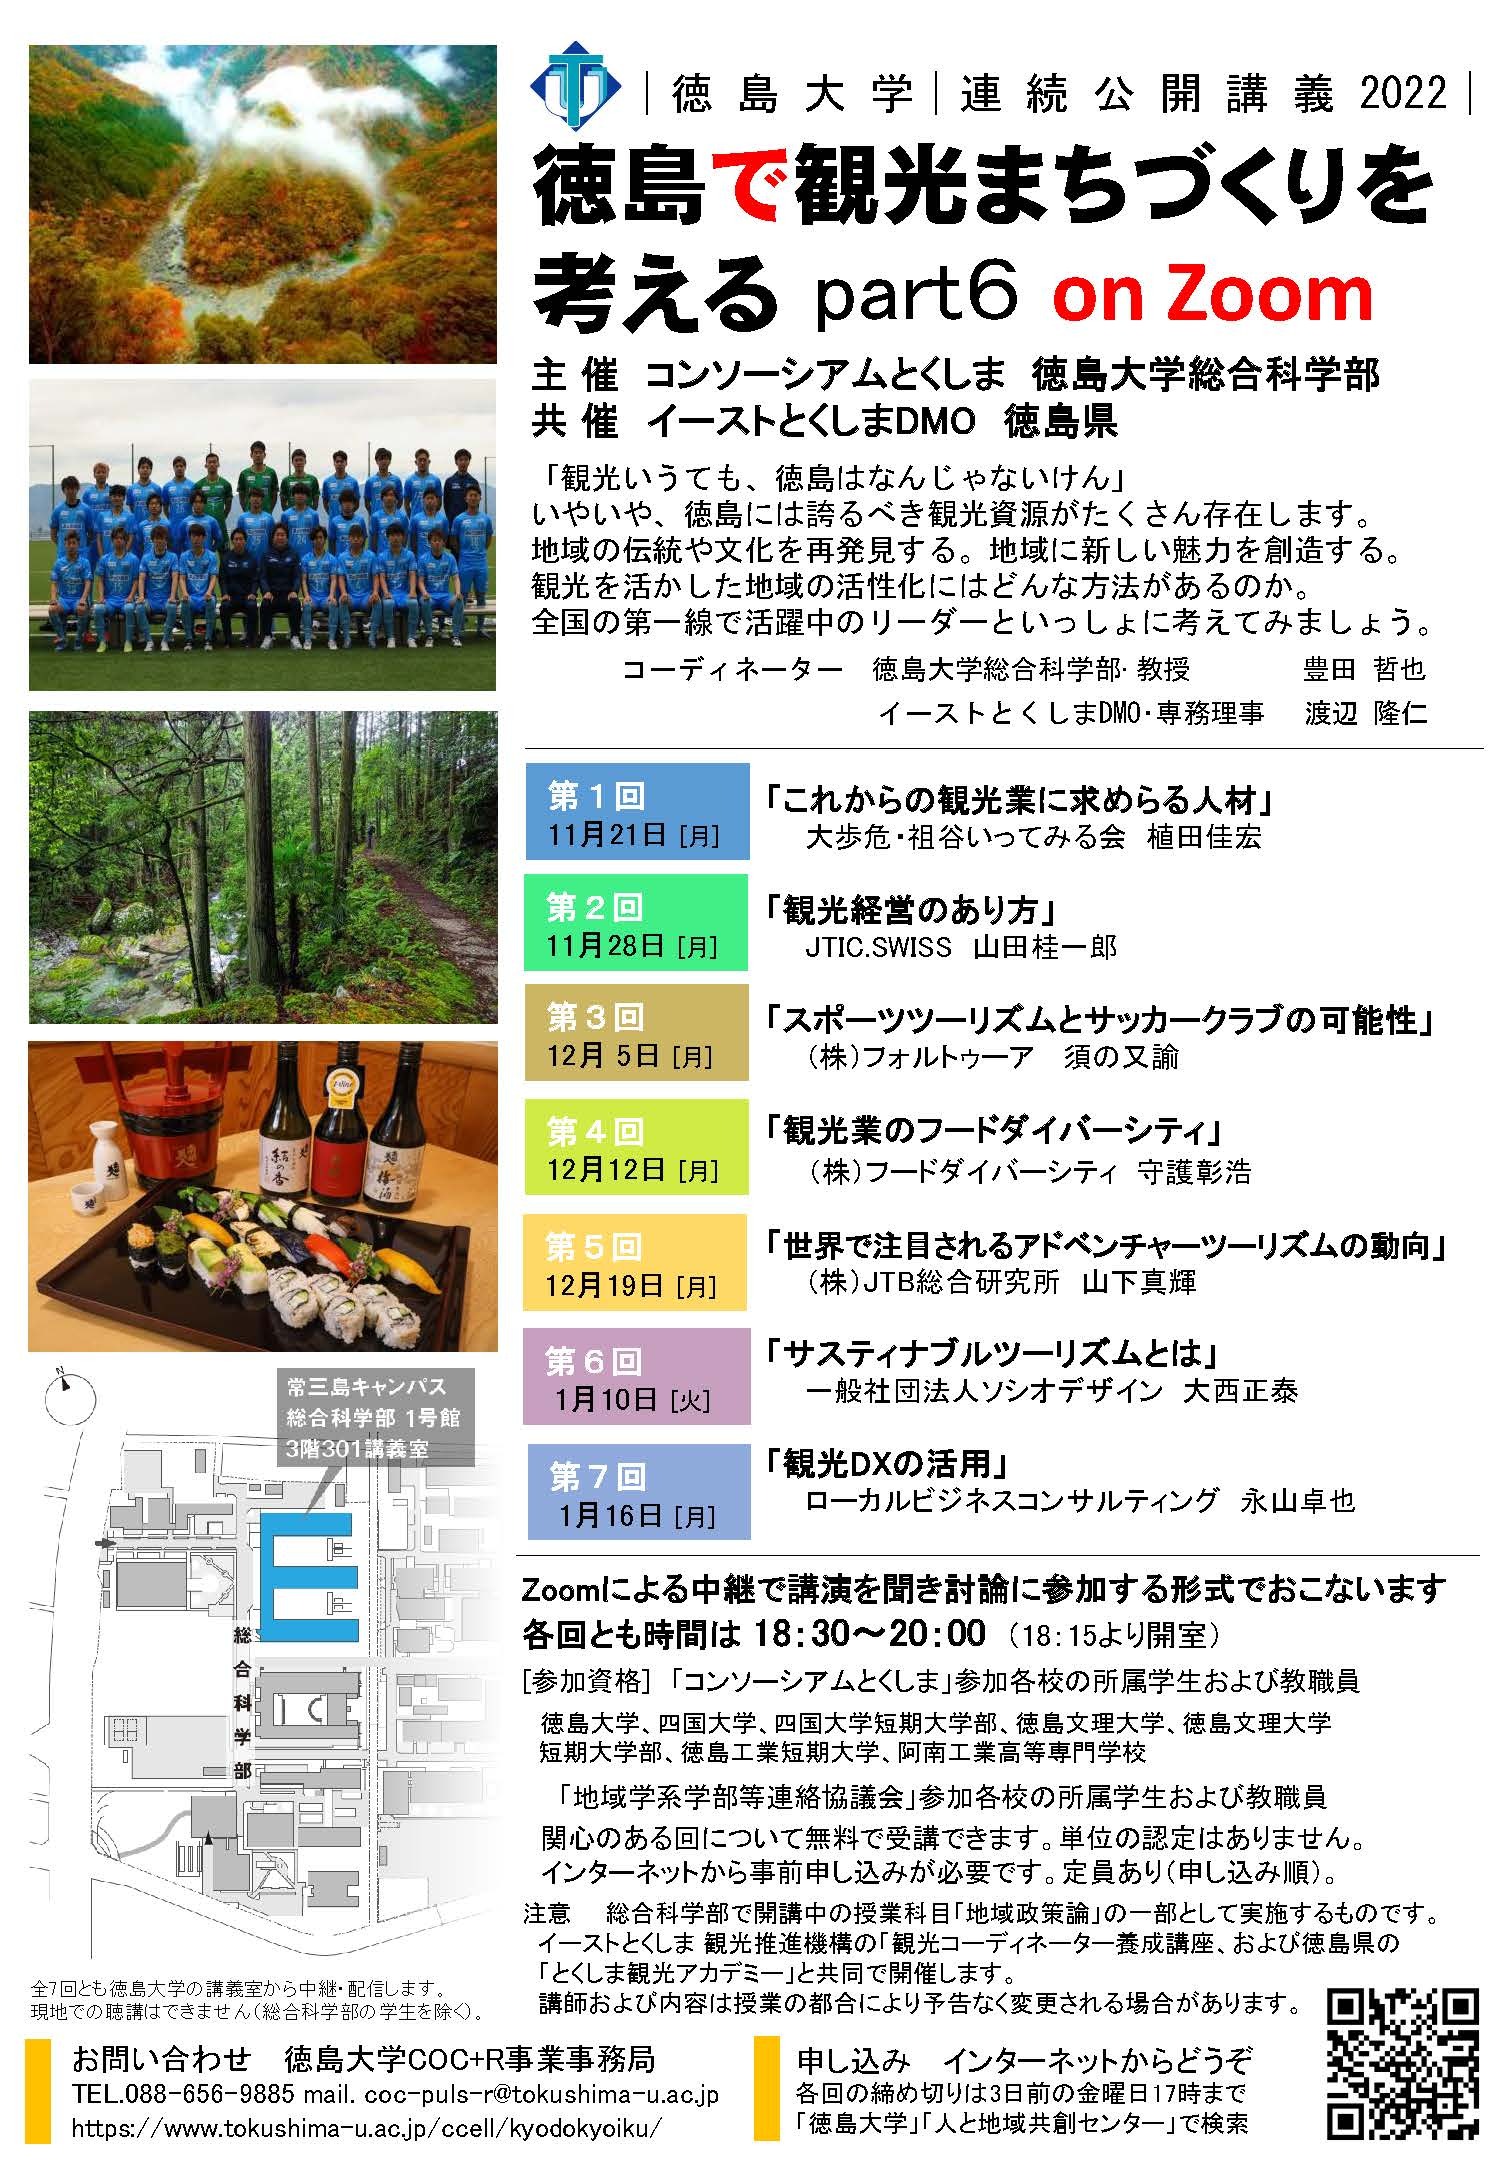 公開講義「徳島で観光まちづくりを考える」ポスター2022.jpg